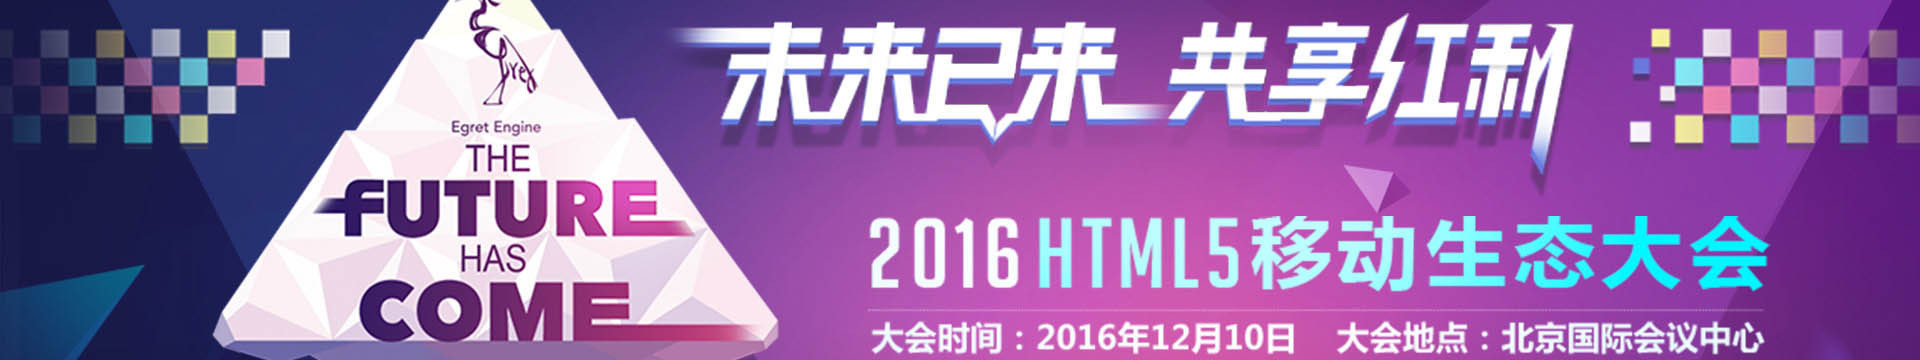 2016HTML5移动生态大会